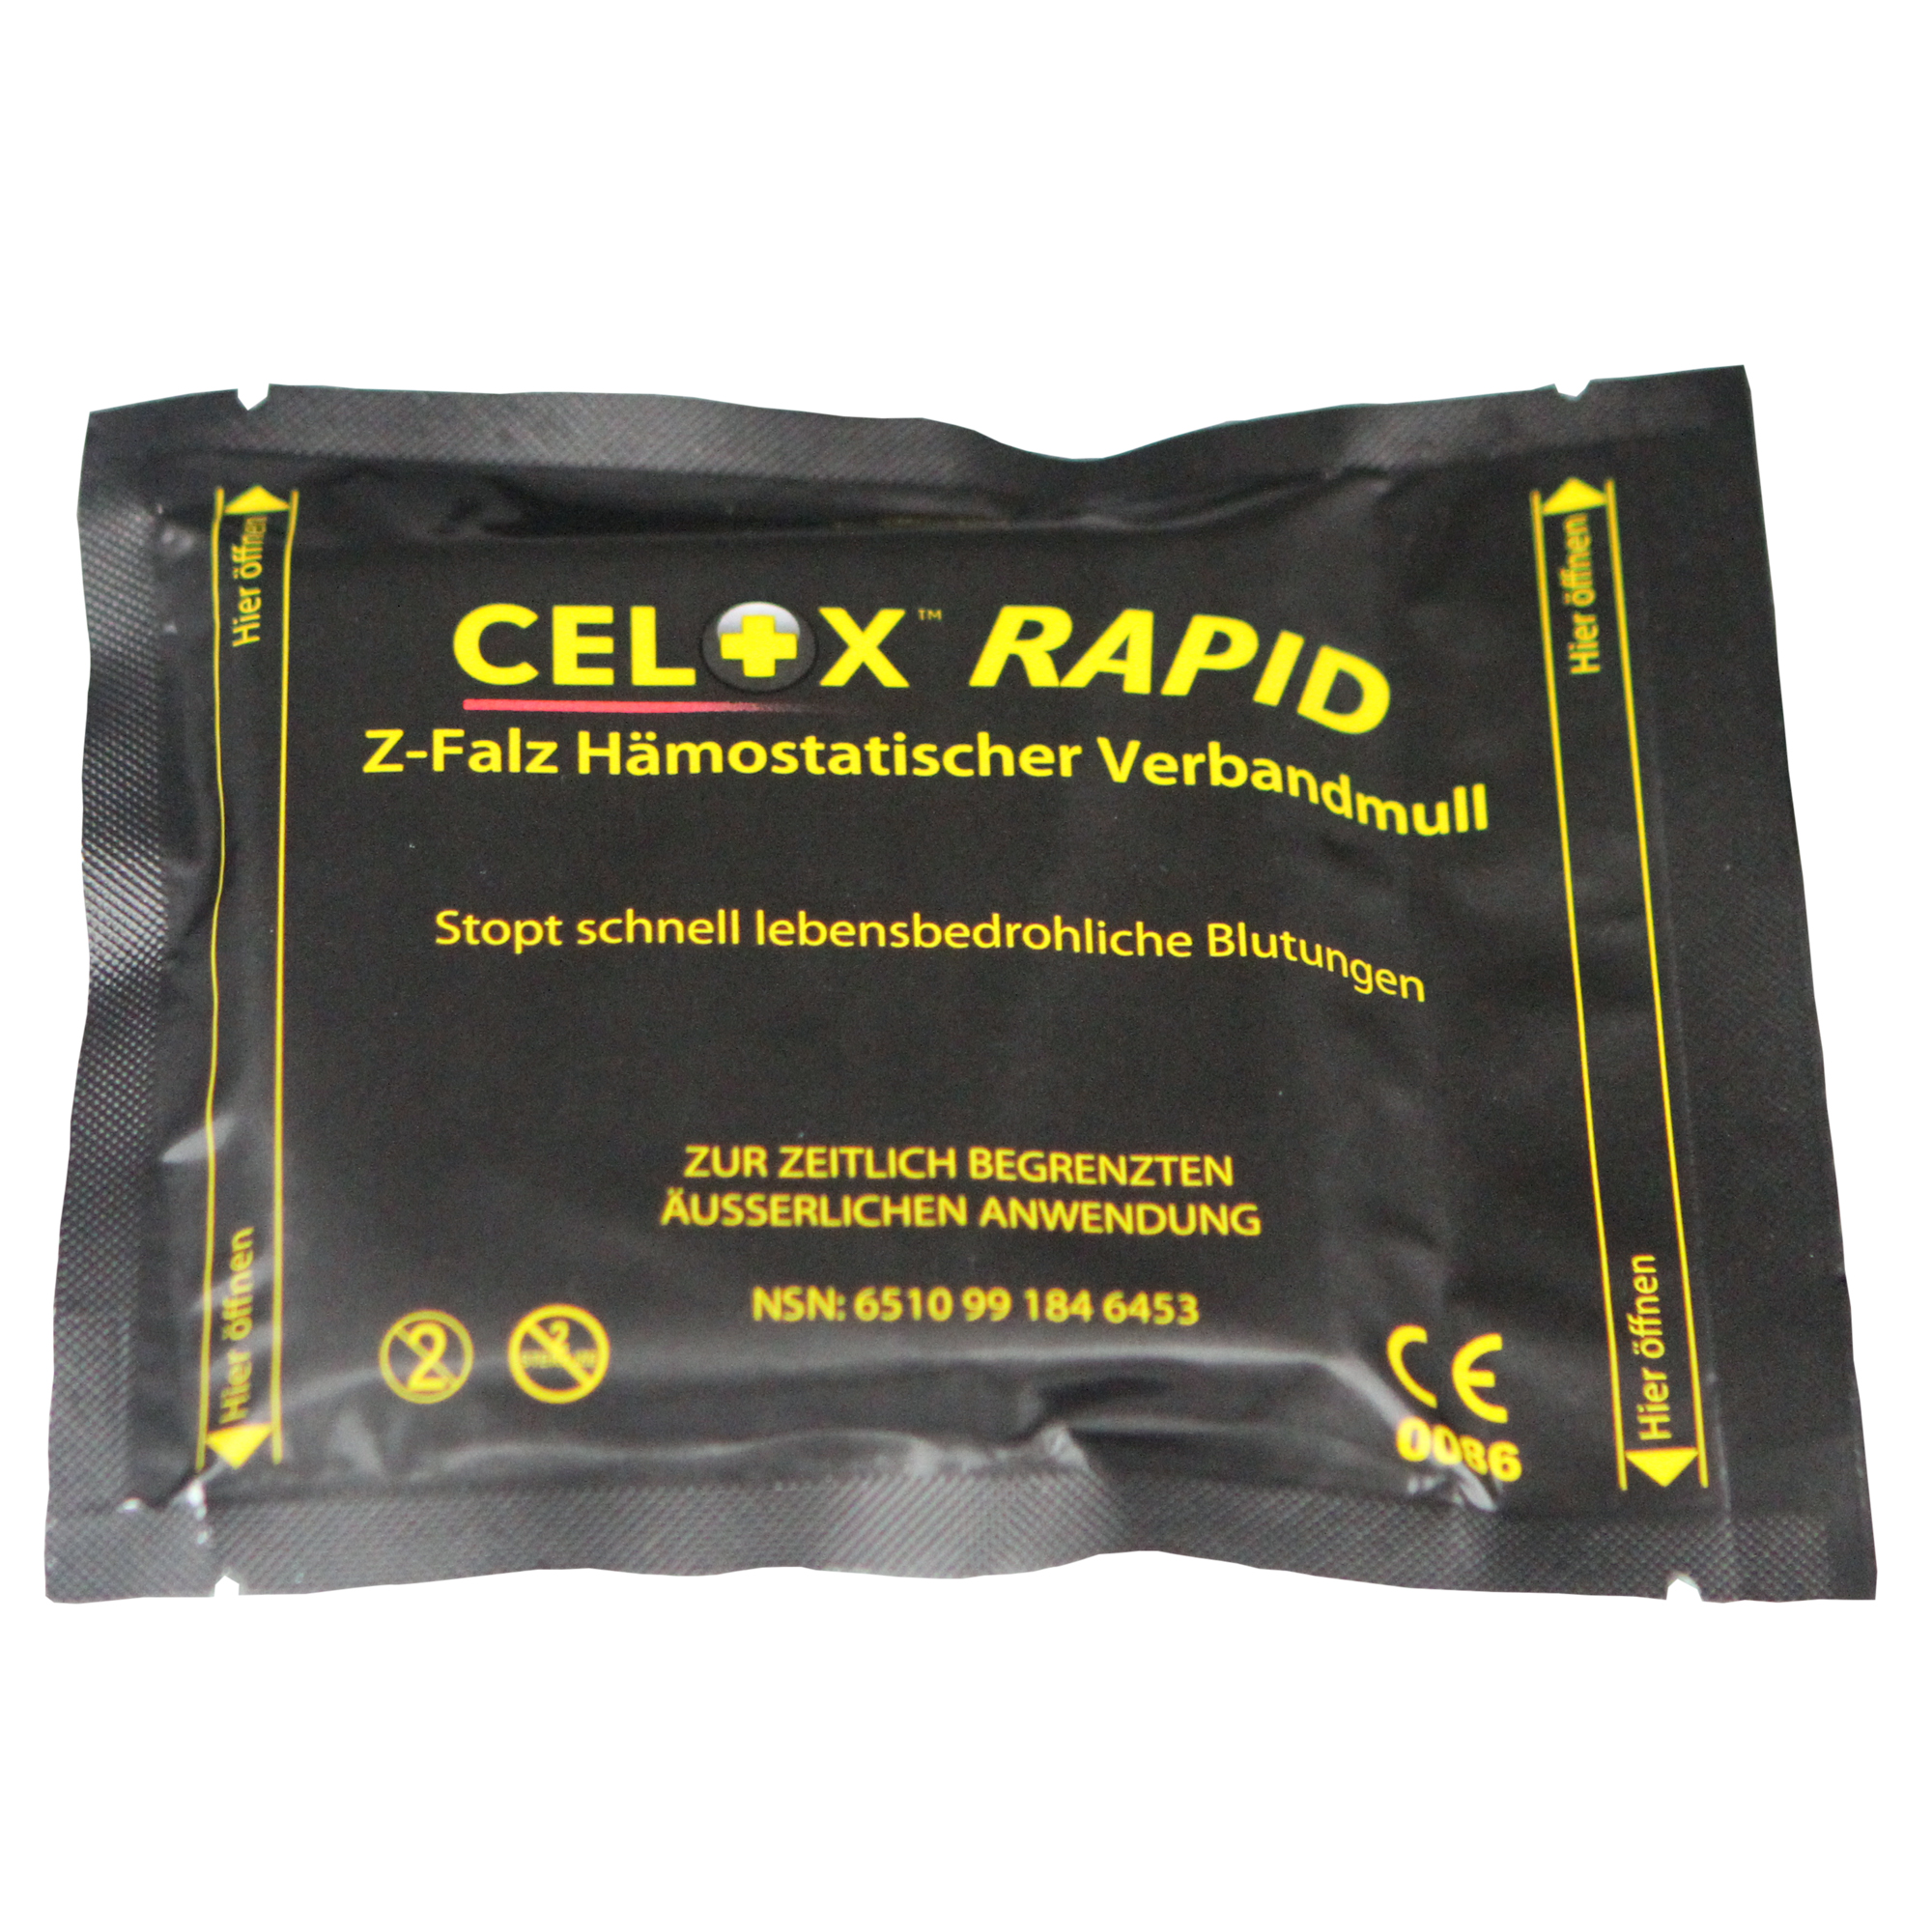 CELOX Gauze Rapid gefaltet (7,6 cm x 1,52 m) schnellstes Hämostyptikum Kompression